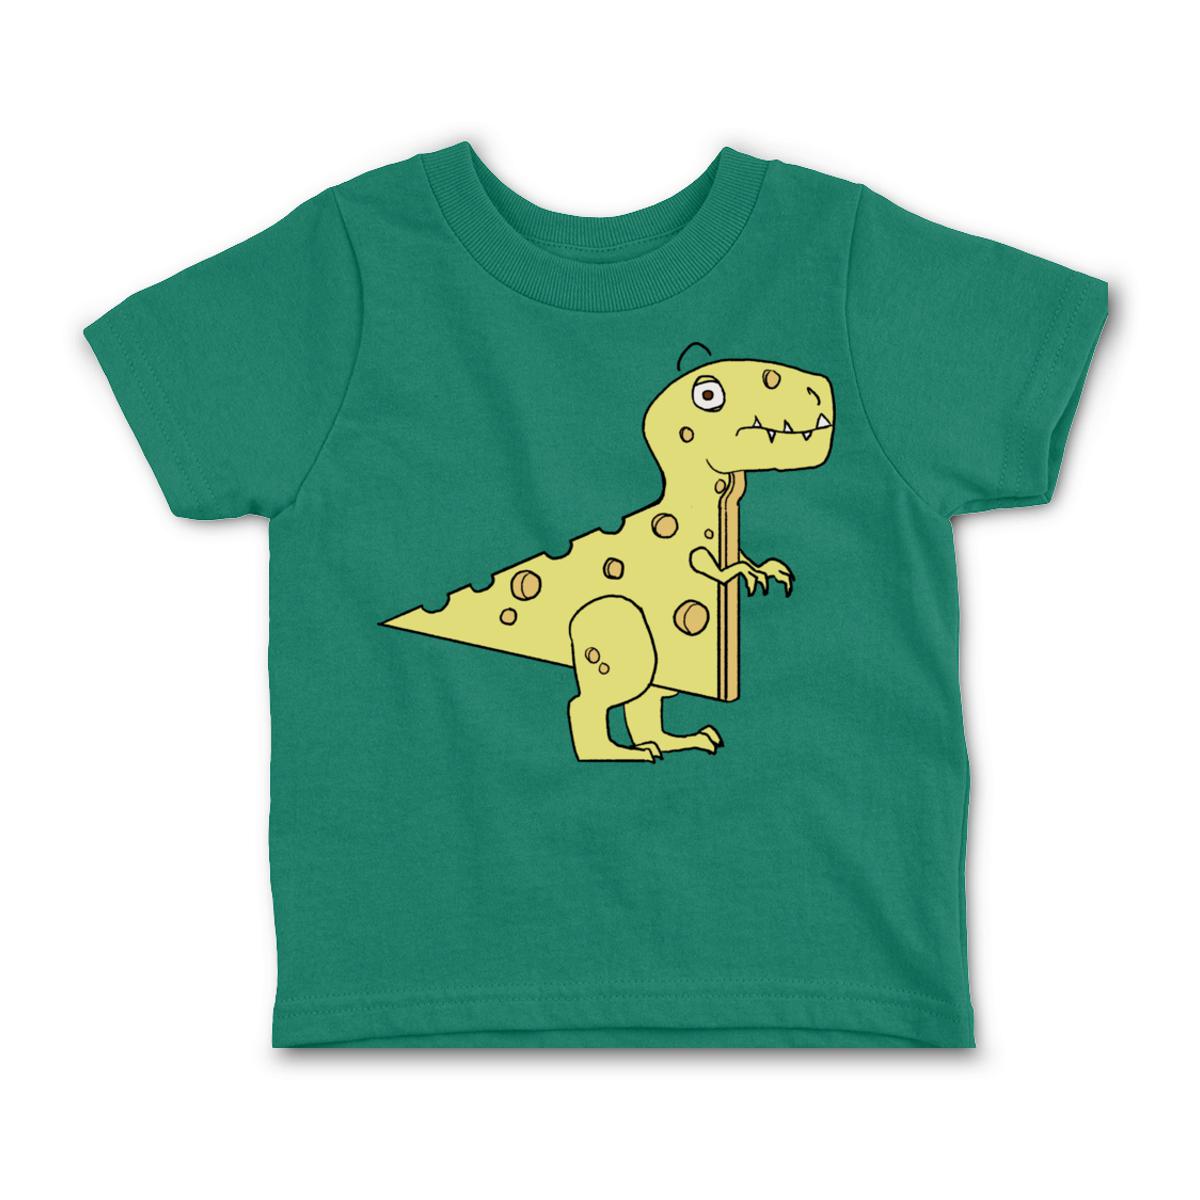 Cheeseosaurus Rex Toddler Tee 4T kelly